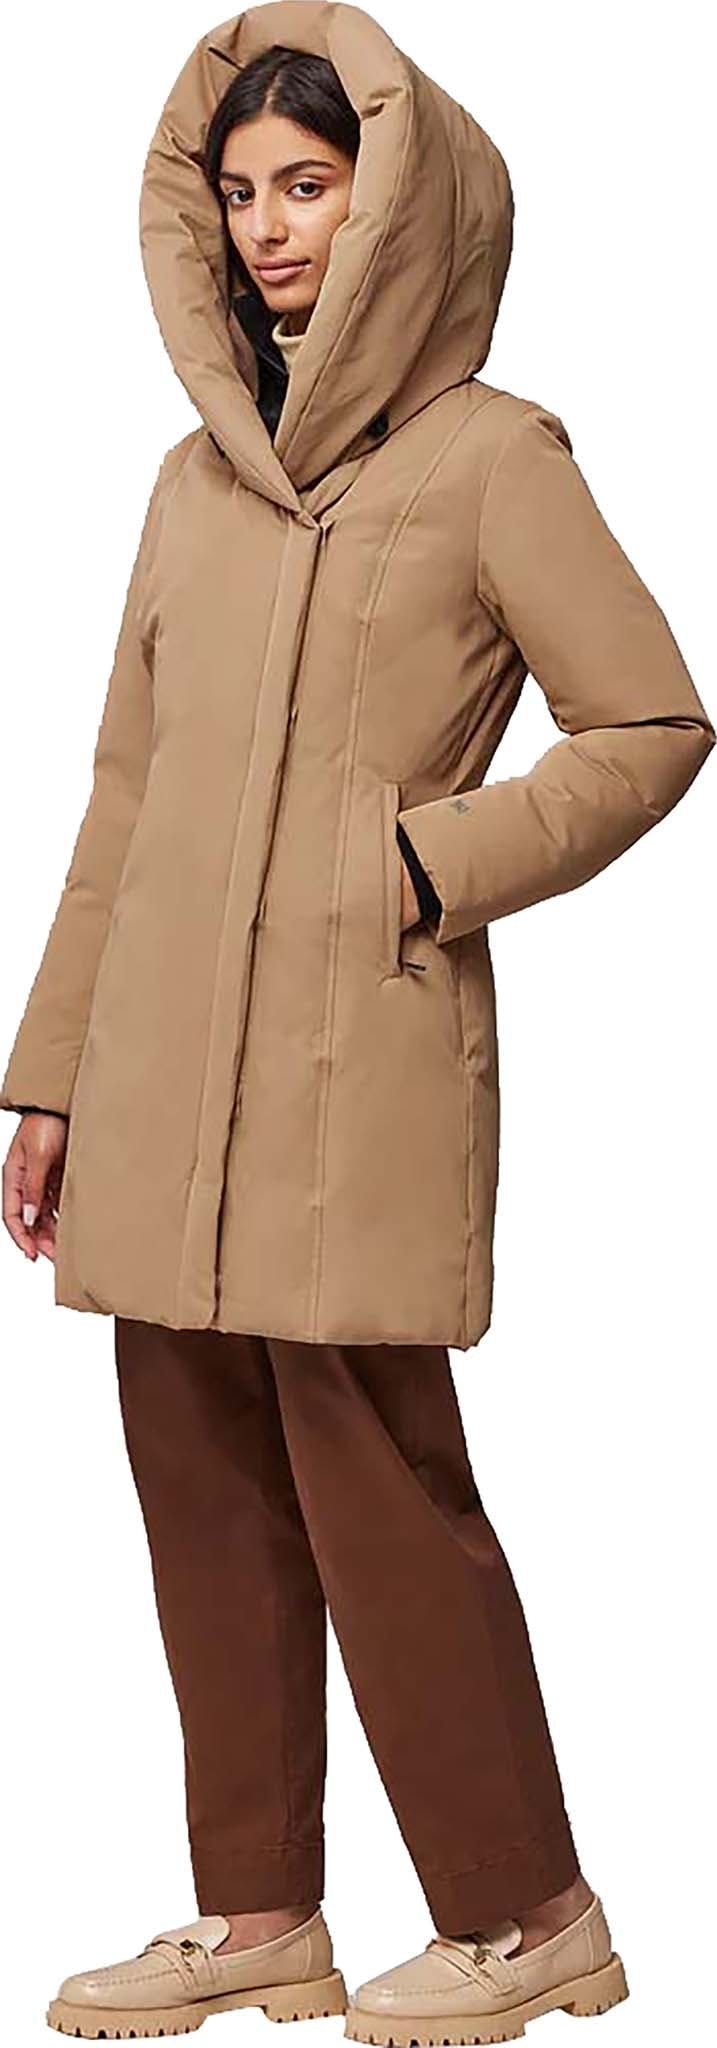 Numéro de l'image de la galerie de produits 4 pour le produit Manteau ajusté en duvet classique avec capuchon Camelia-C - Femme